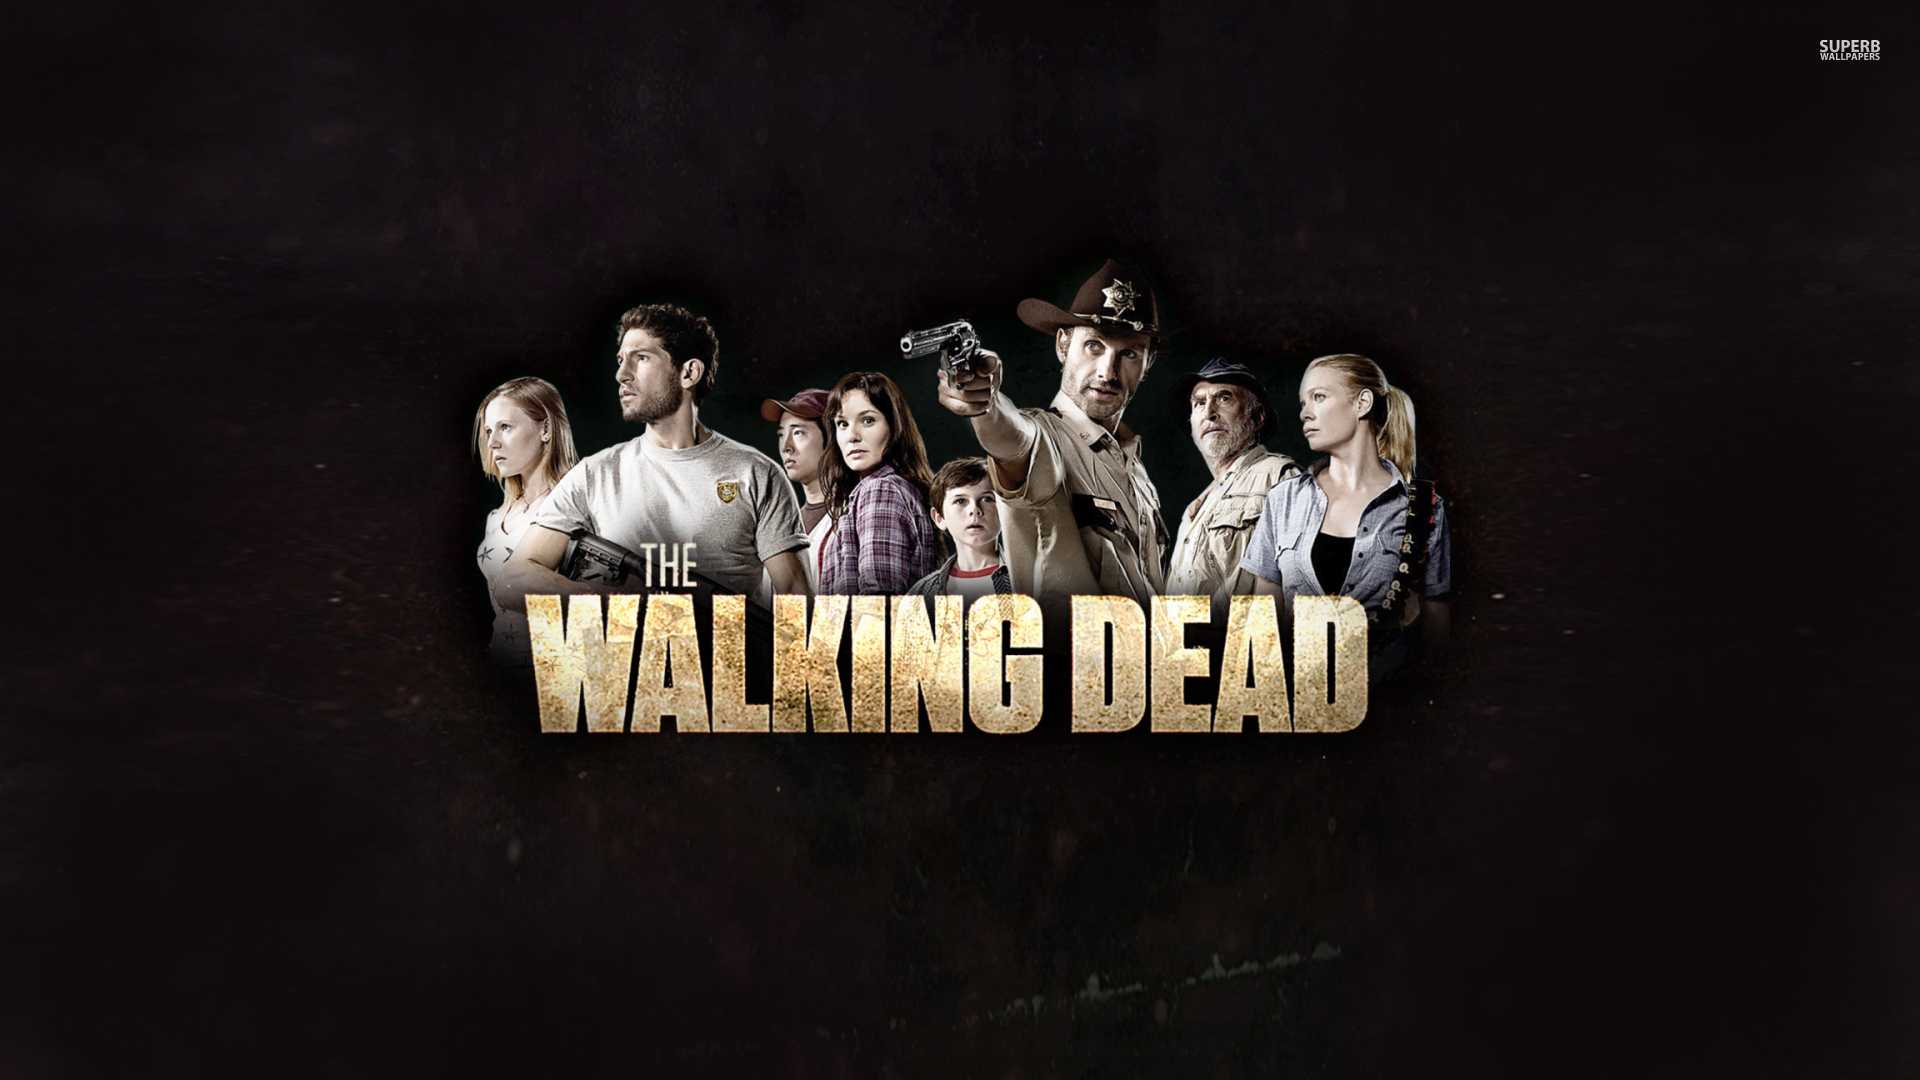 The Walking Dead : Desktop and mobile wallpaper : Wallippo